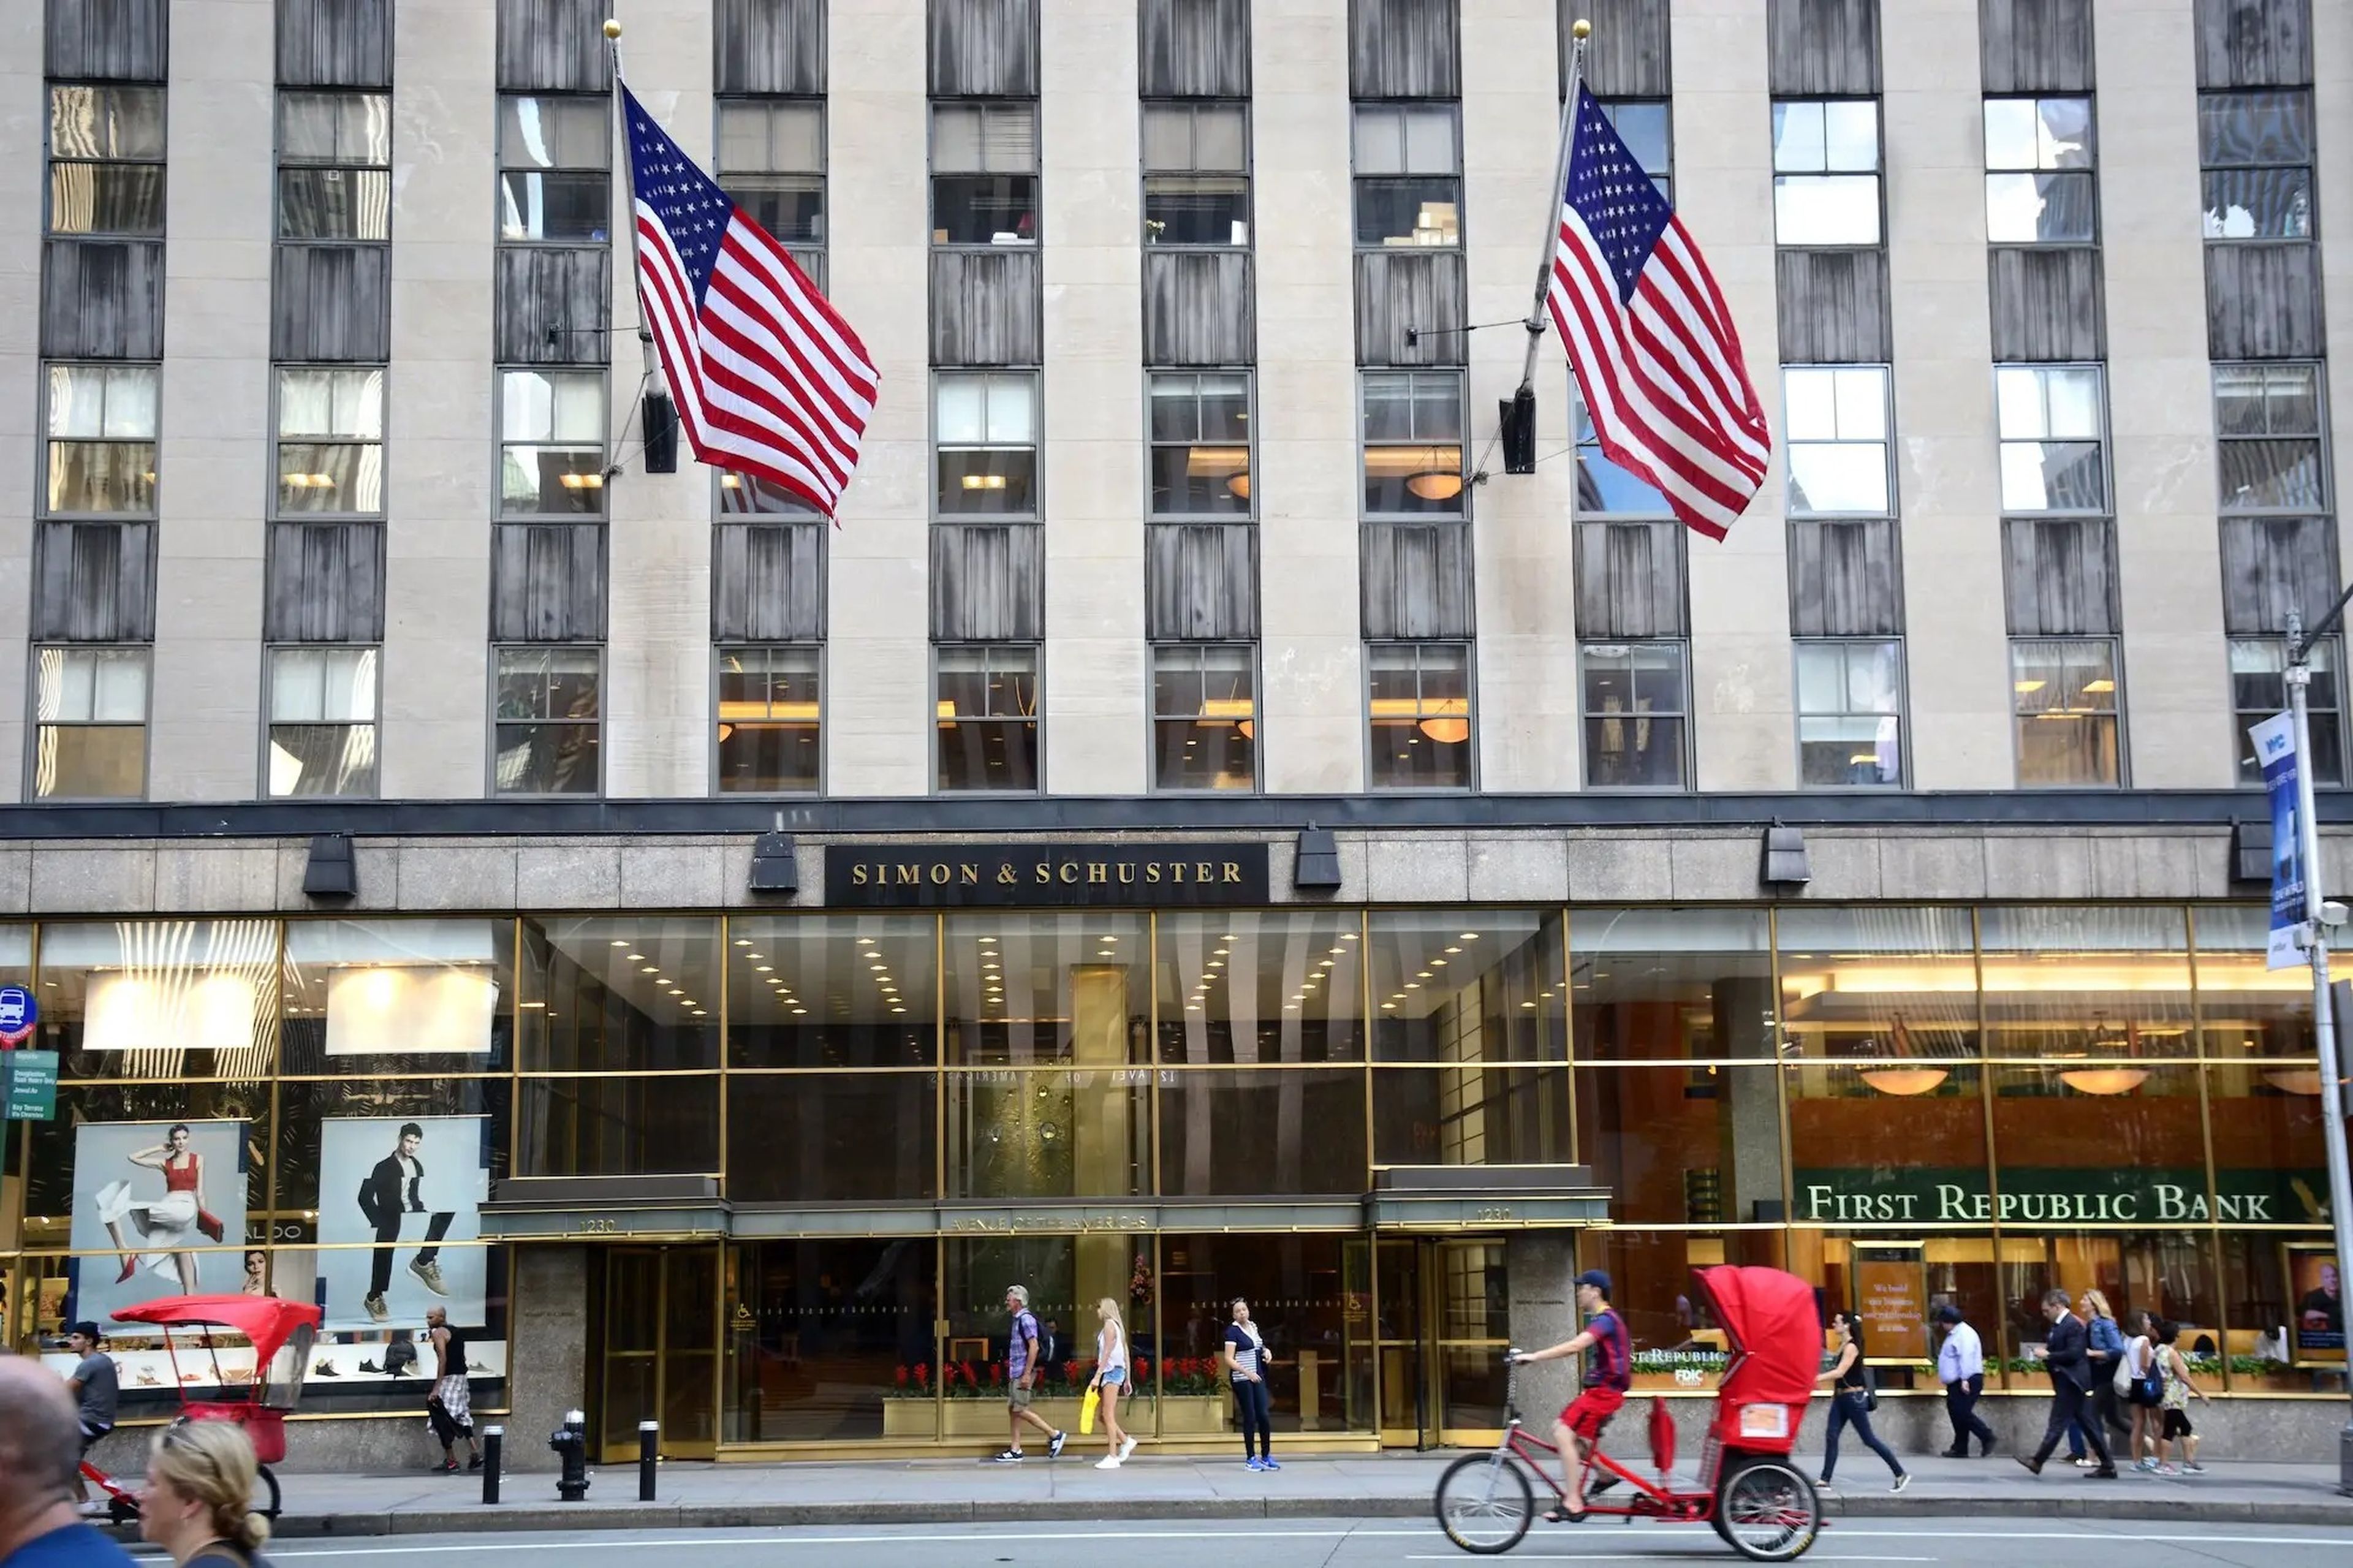 La sede de las oficinas de la editorial Simon & Schuster en Nueva York, Estados Unidos.